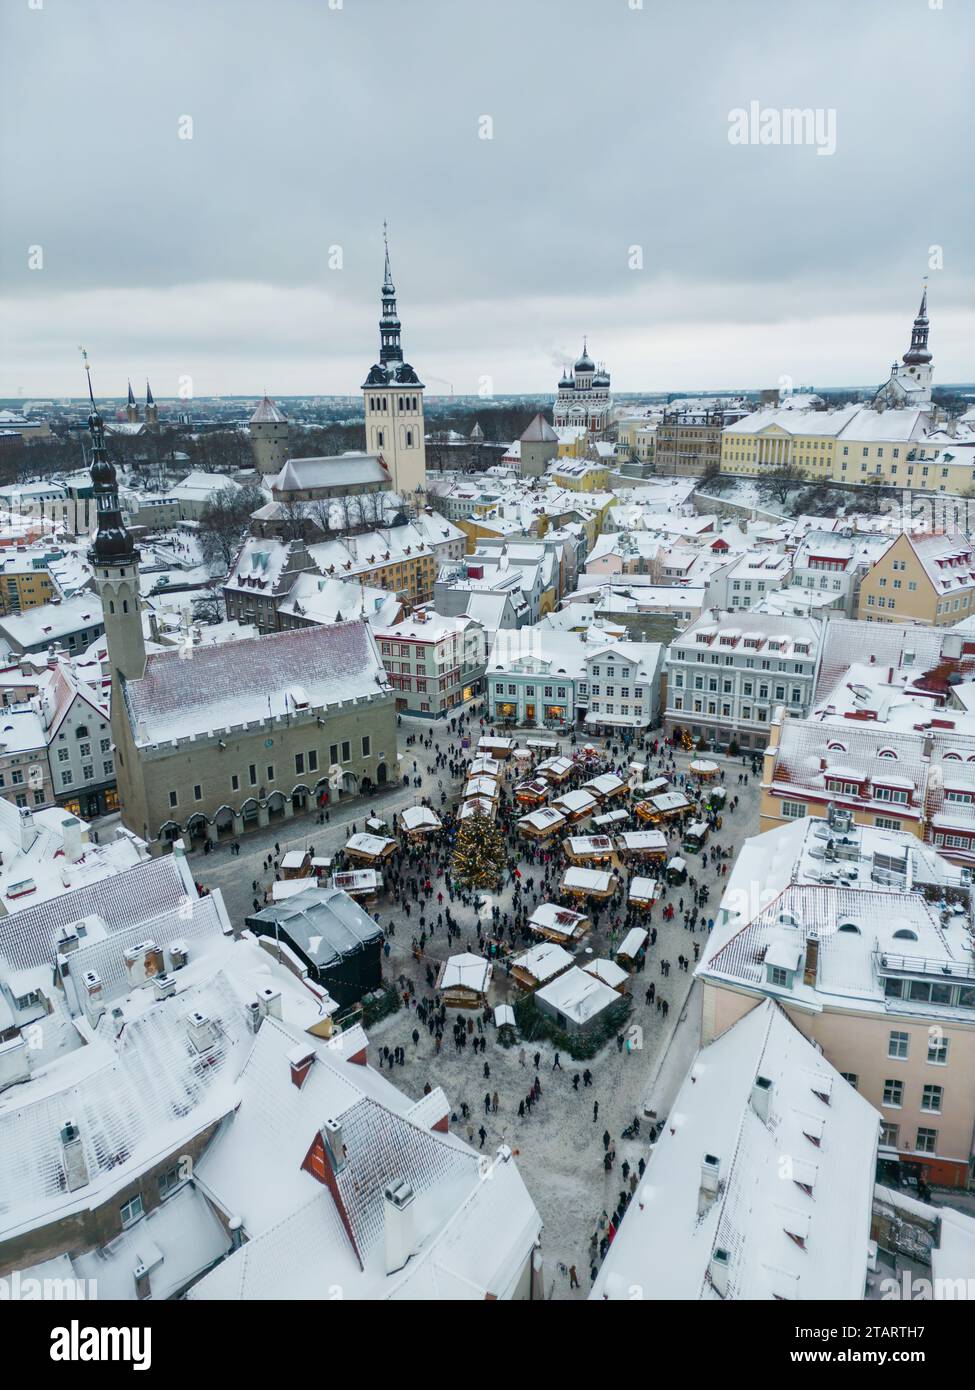 Vue aérienne du marché de Noël dans la vieille ville de Tallinn, Estonie Banque D'Images